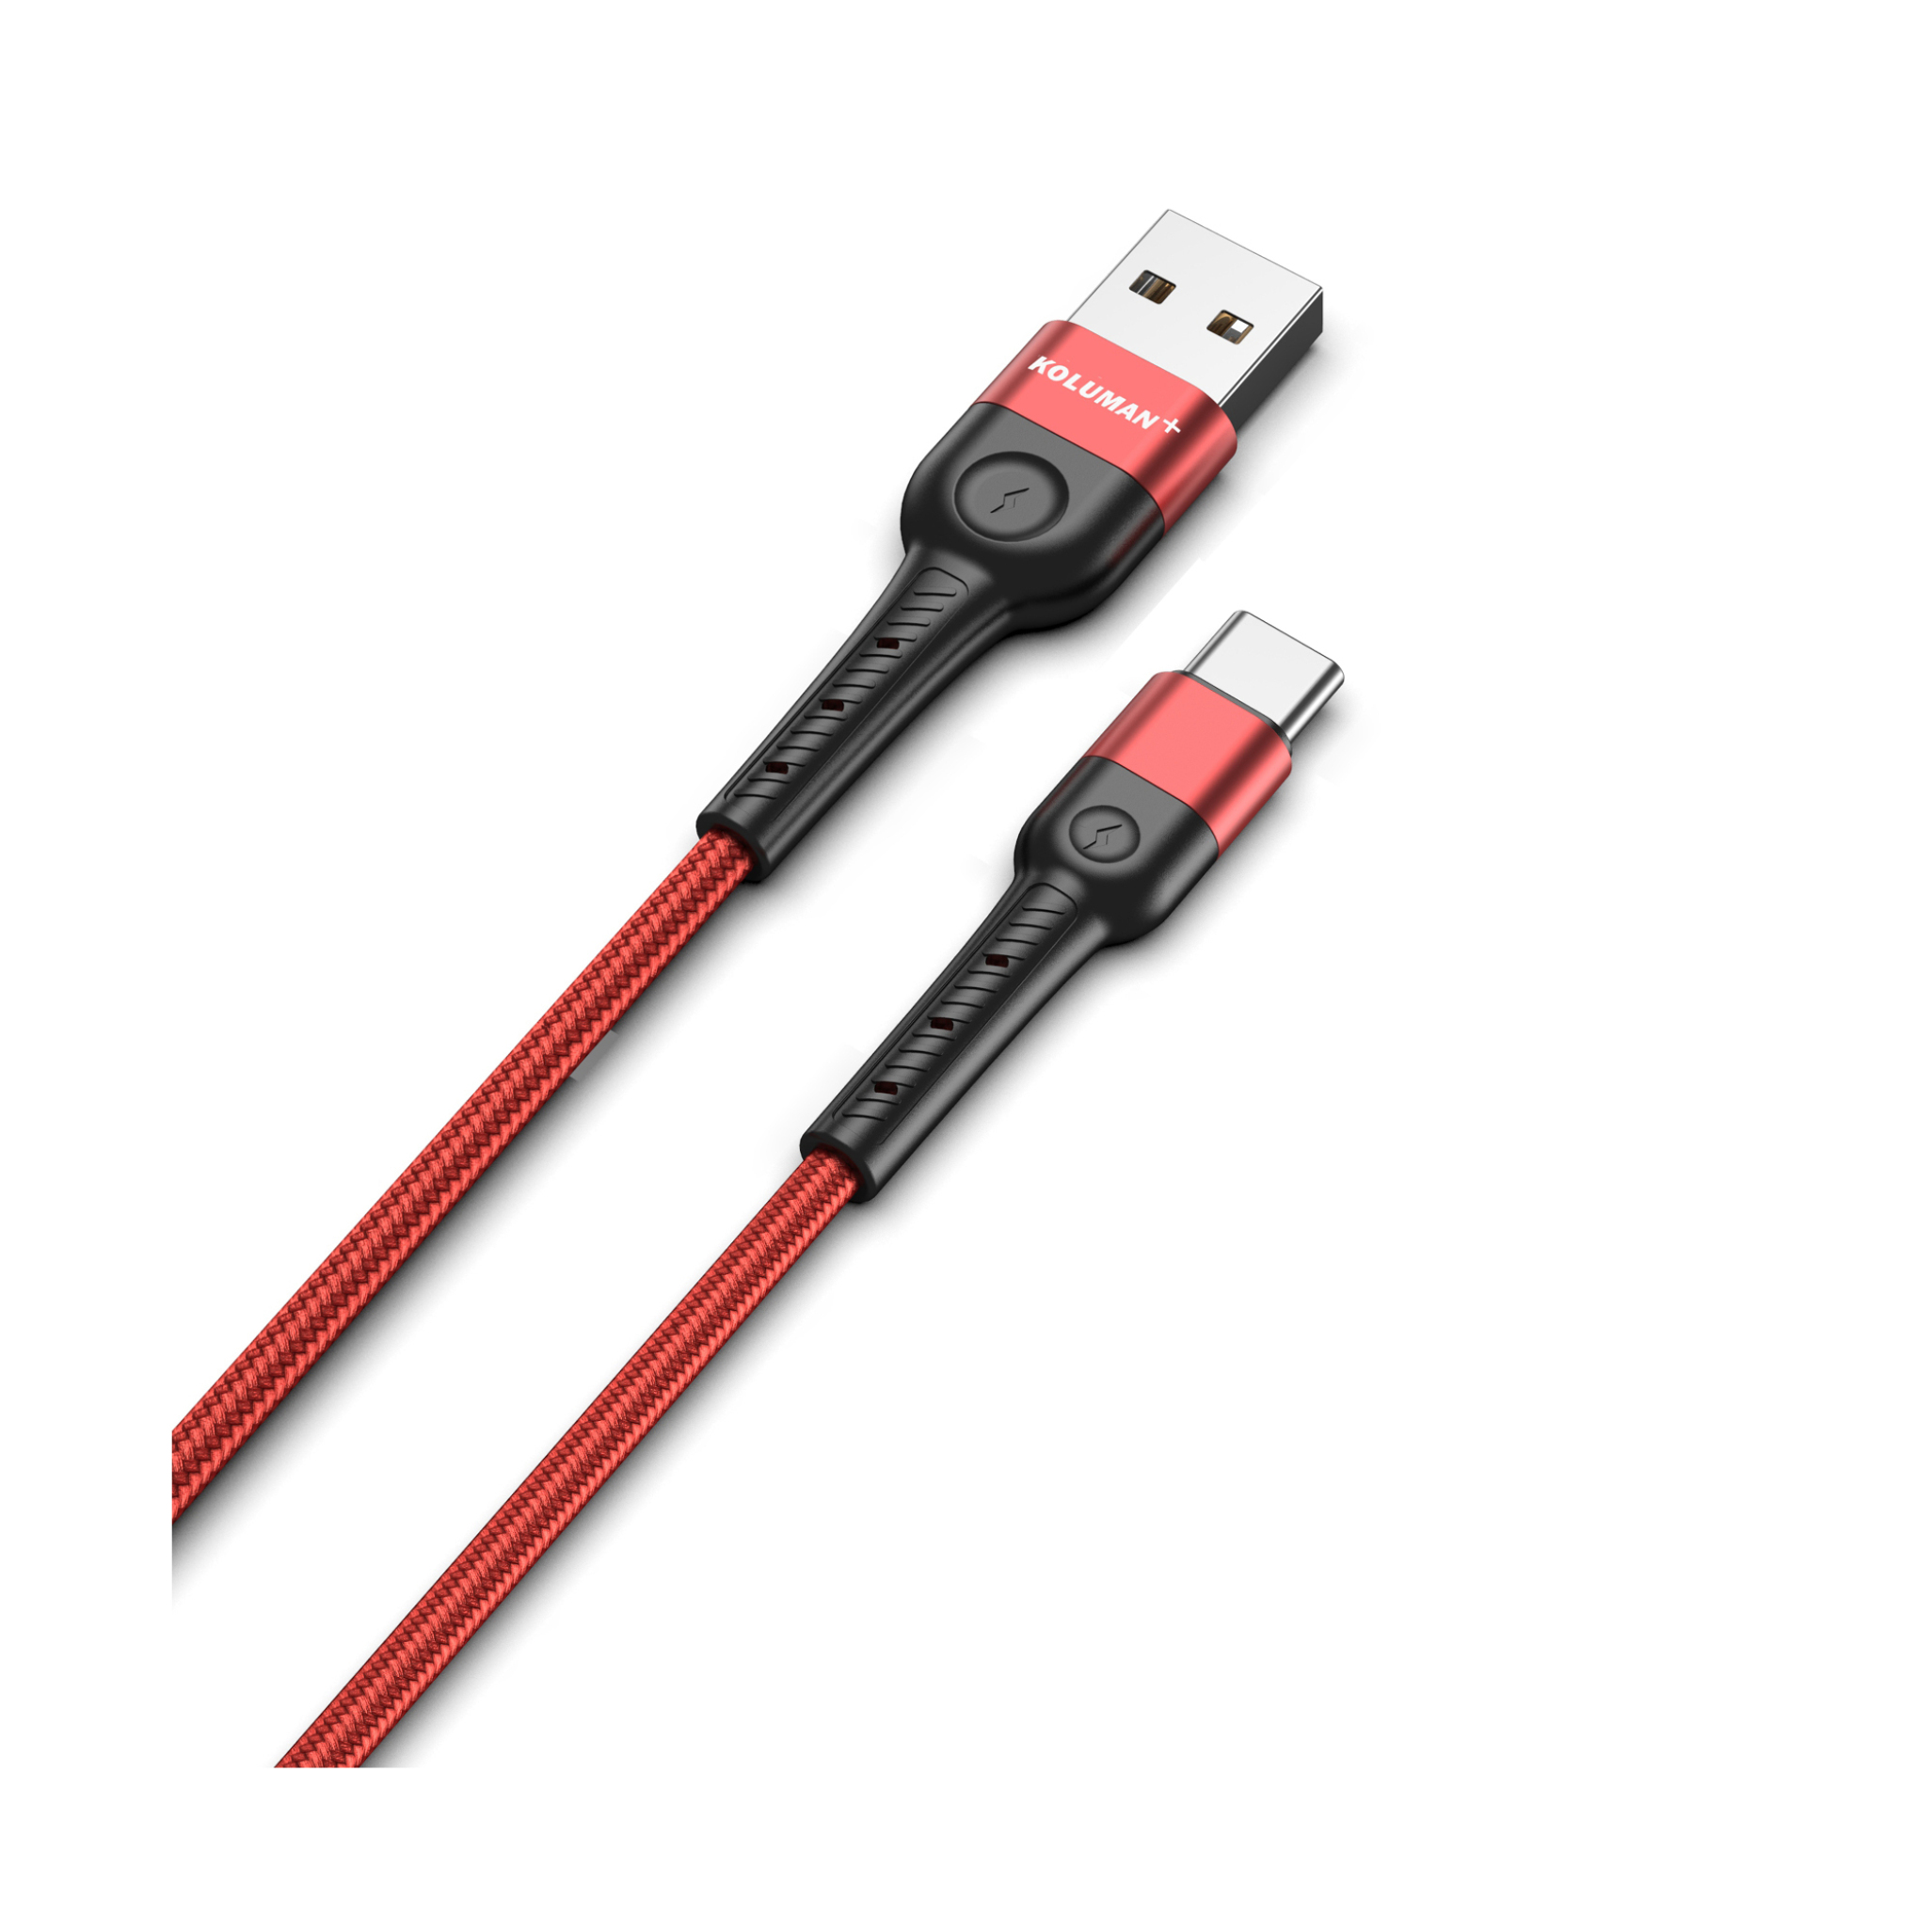  کابل USB به USB-C به طول 200 سانتی متر  